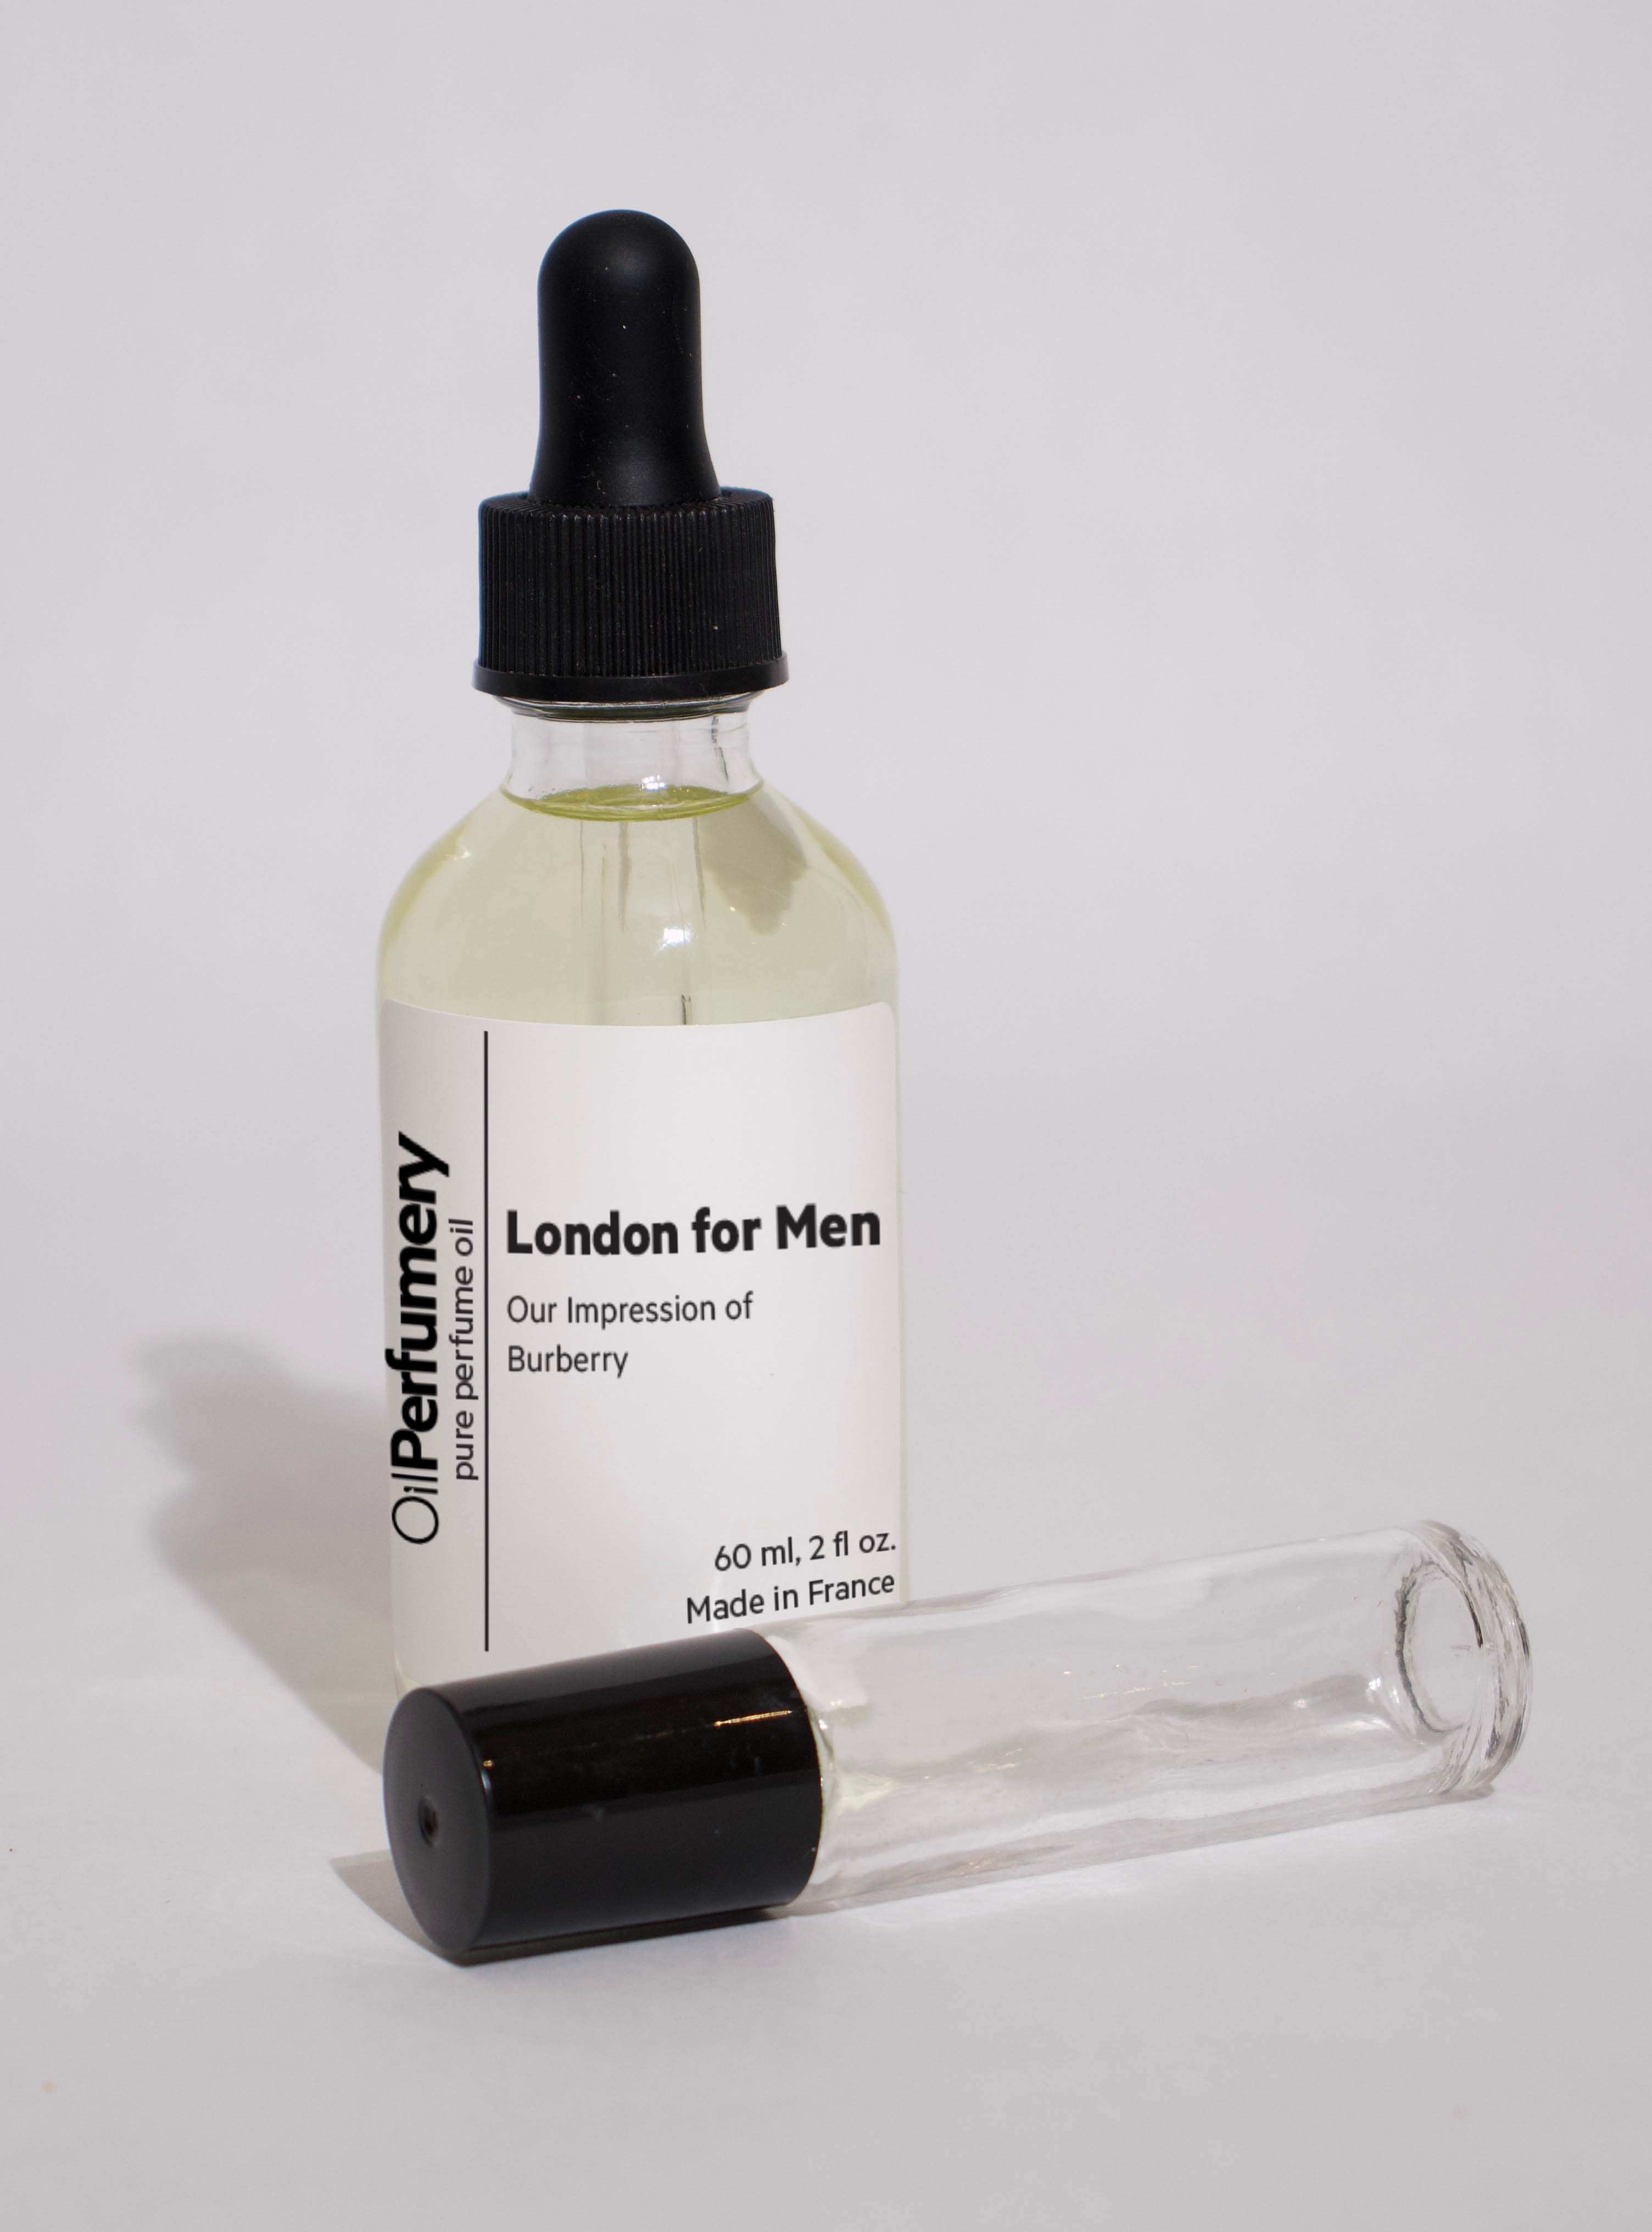 Burberry - London for Men - Oil Perfumery